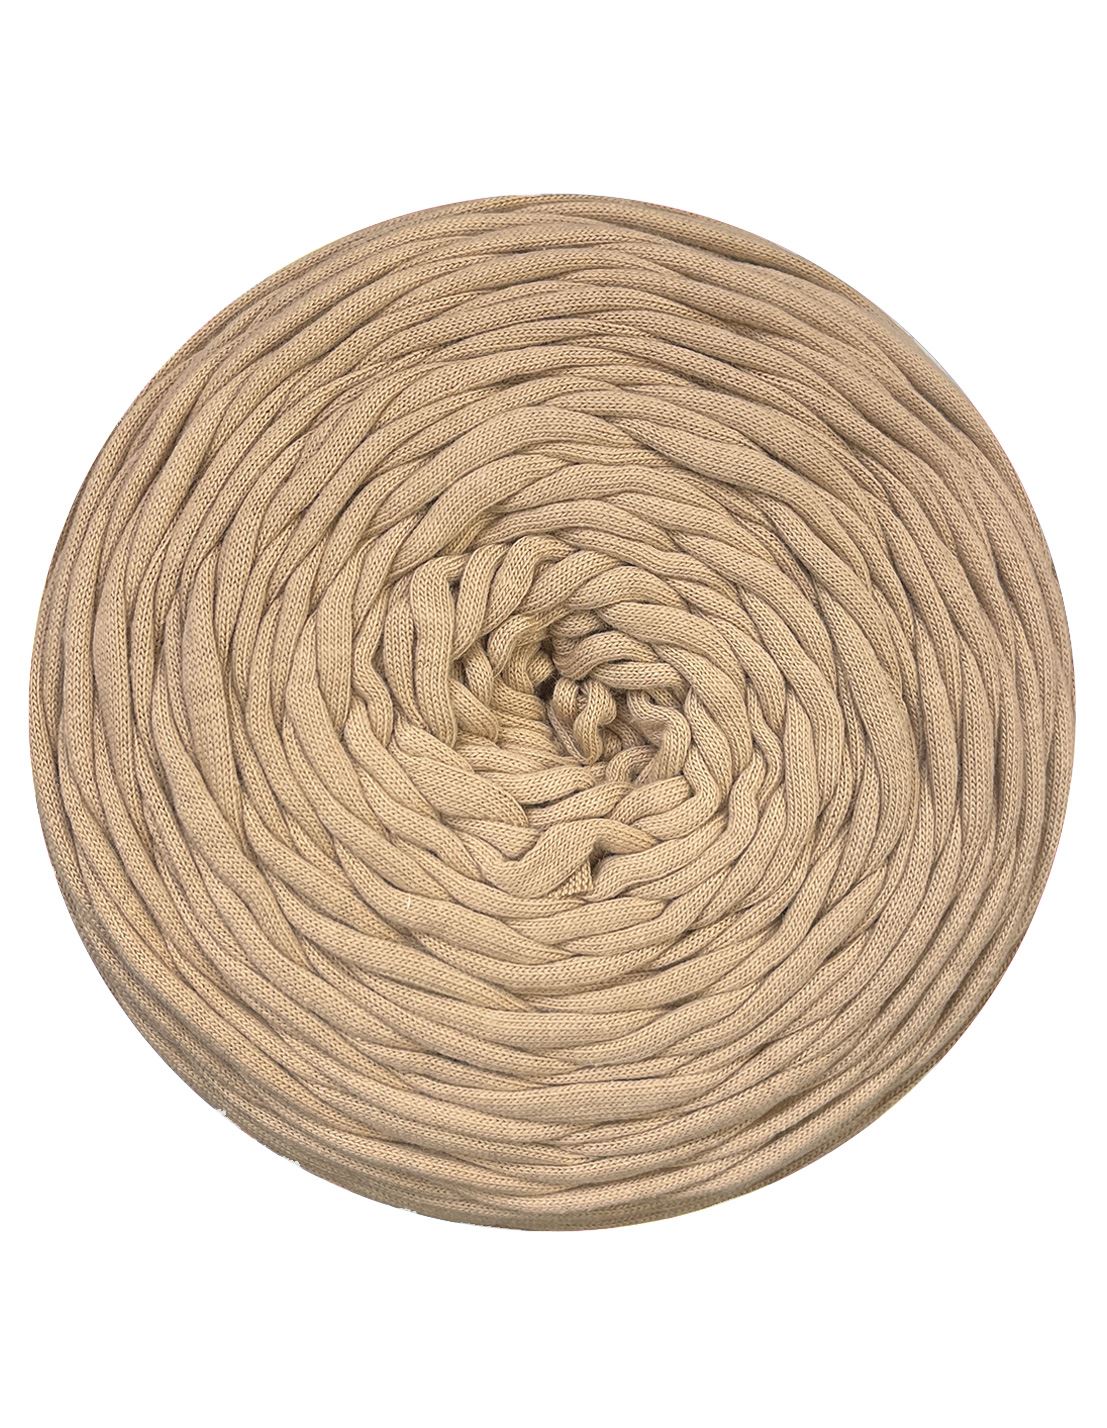 Deep sand t-shirt yarn by Rescue Yarn (100-120m)